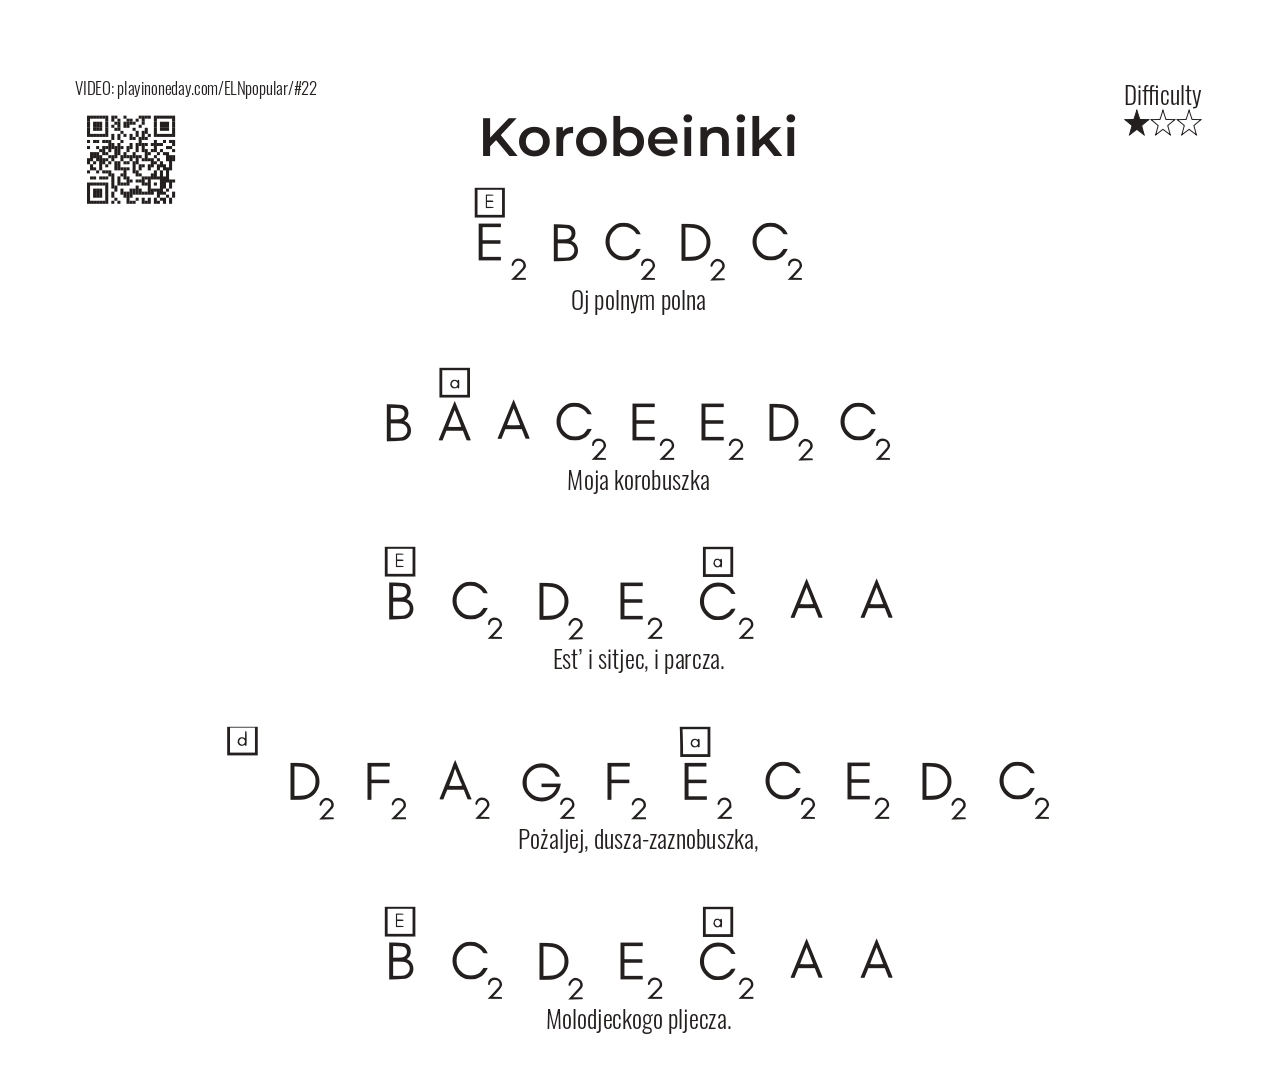 Korobeiniki letter notes song